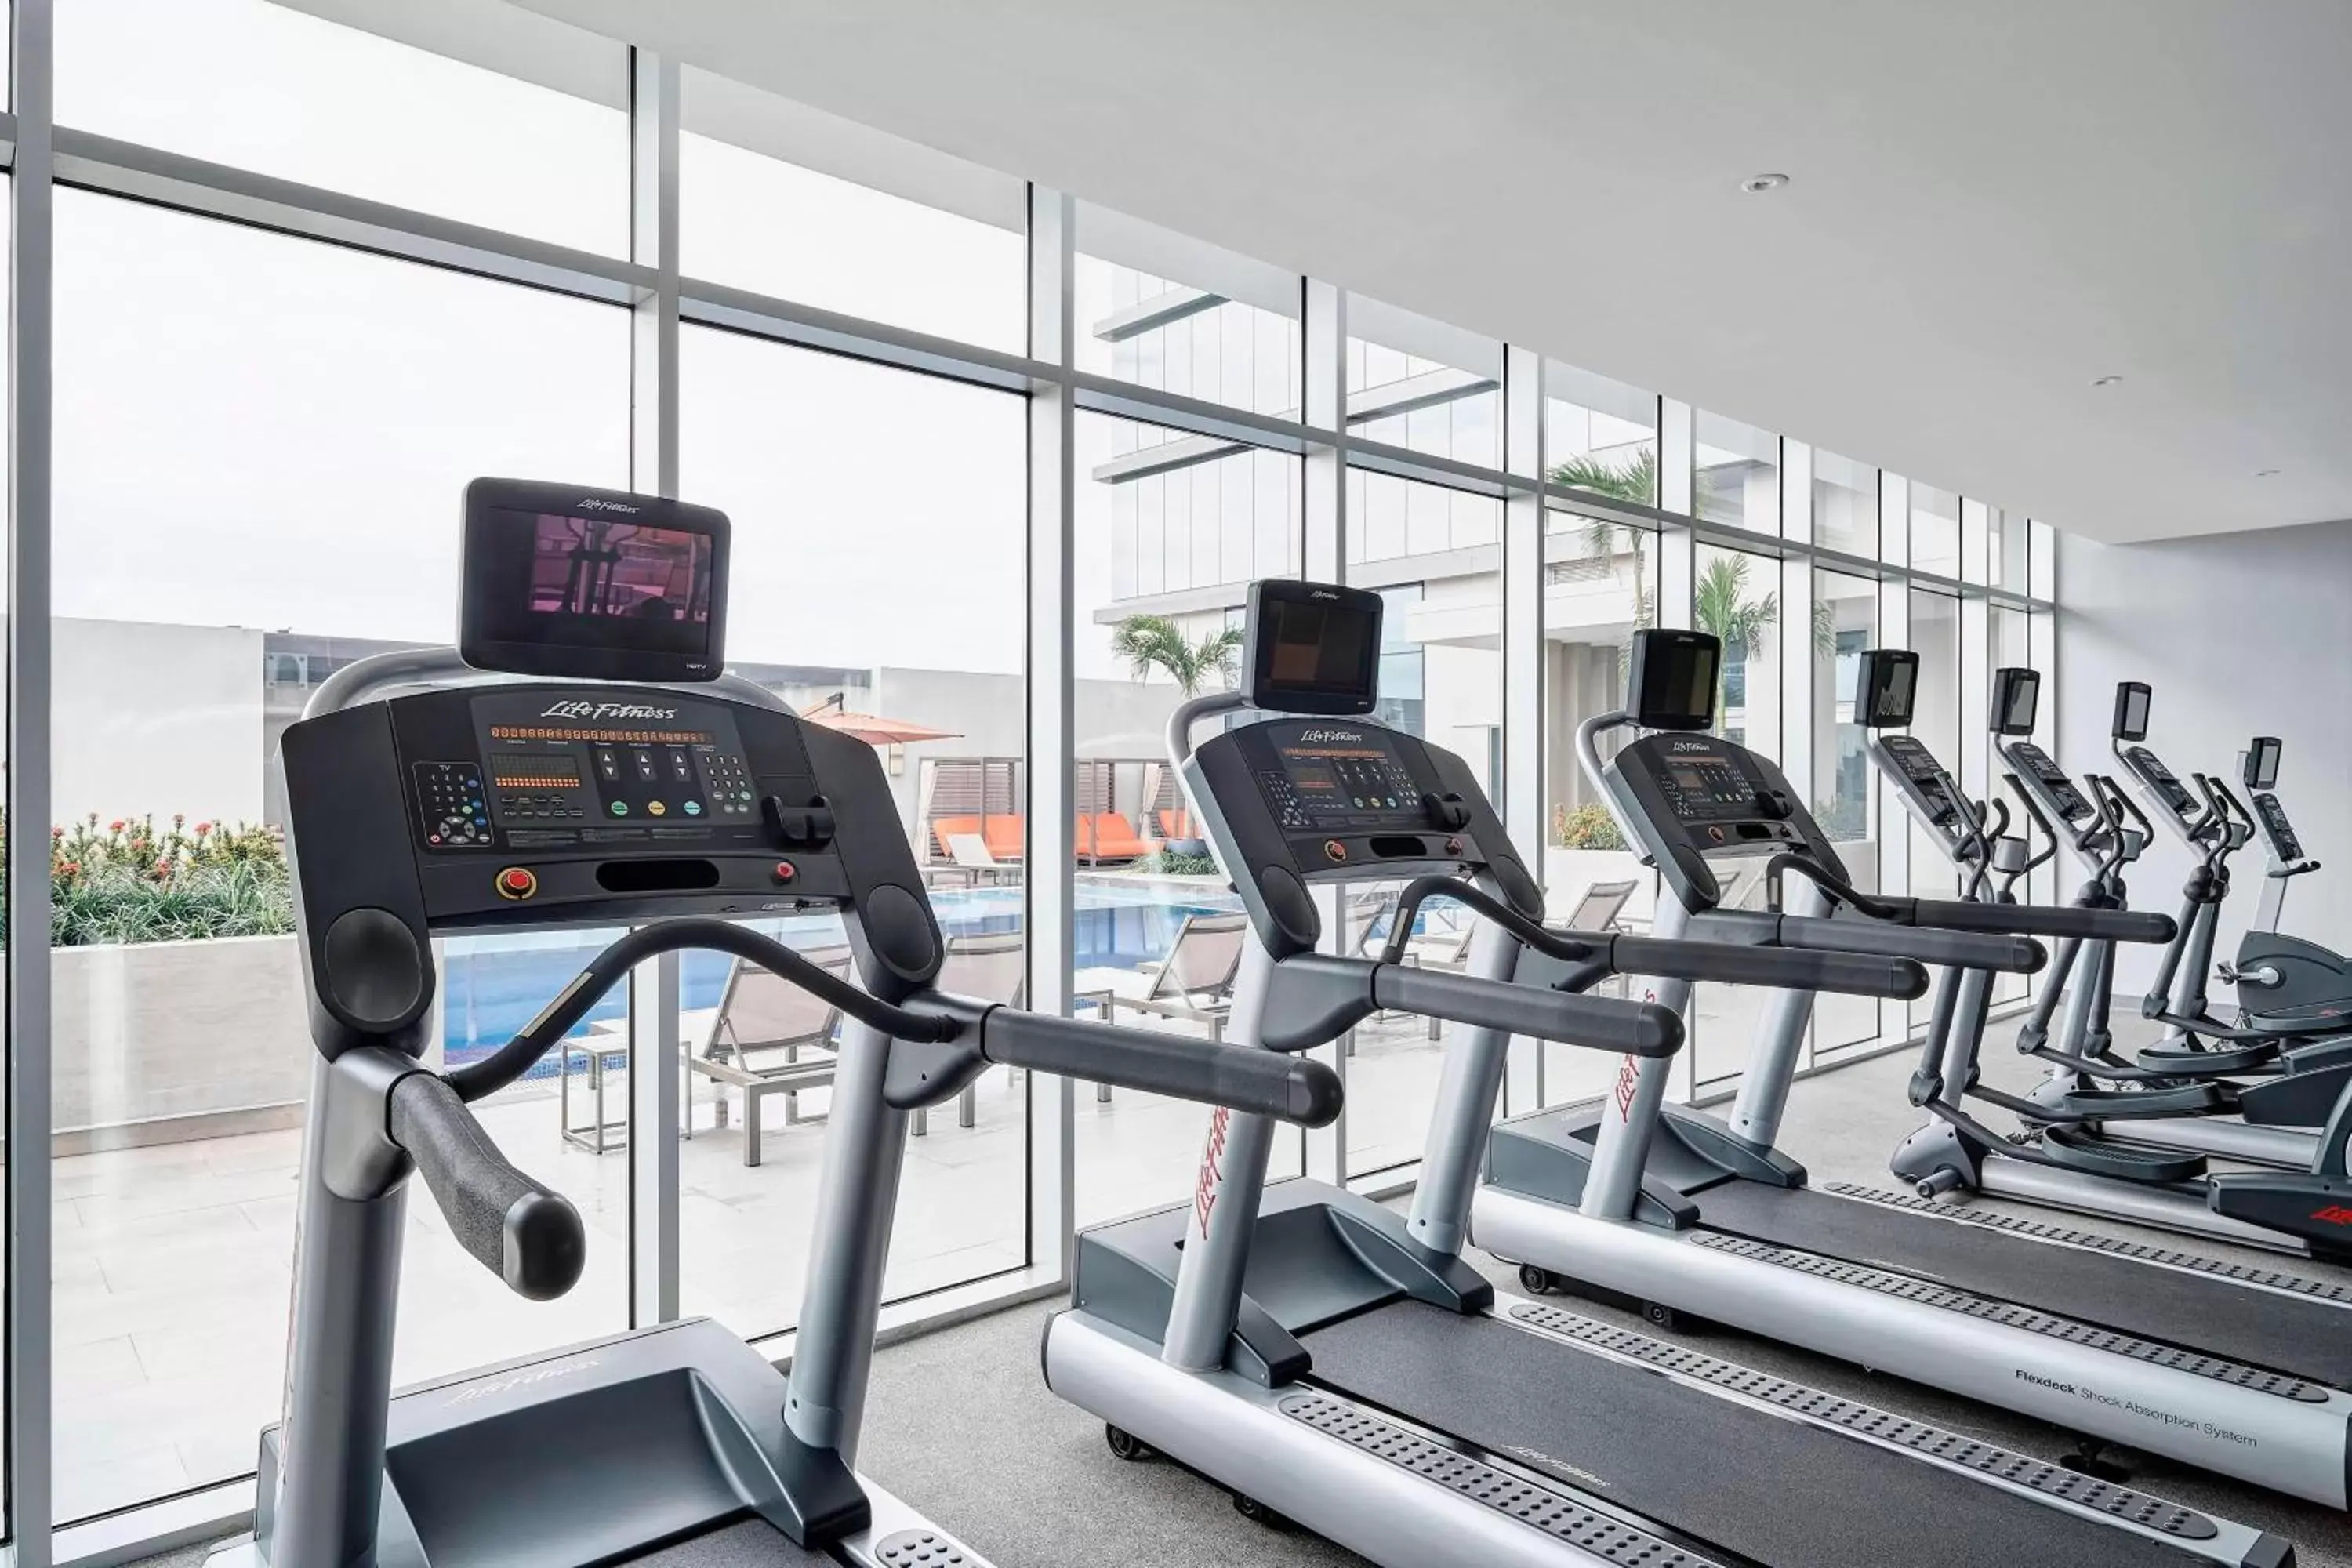 Fitness centre/facilities, Fitness Center/Facilities in Marriott Santa Cruz de la Sierra Hotel